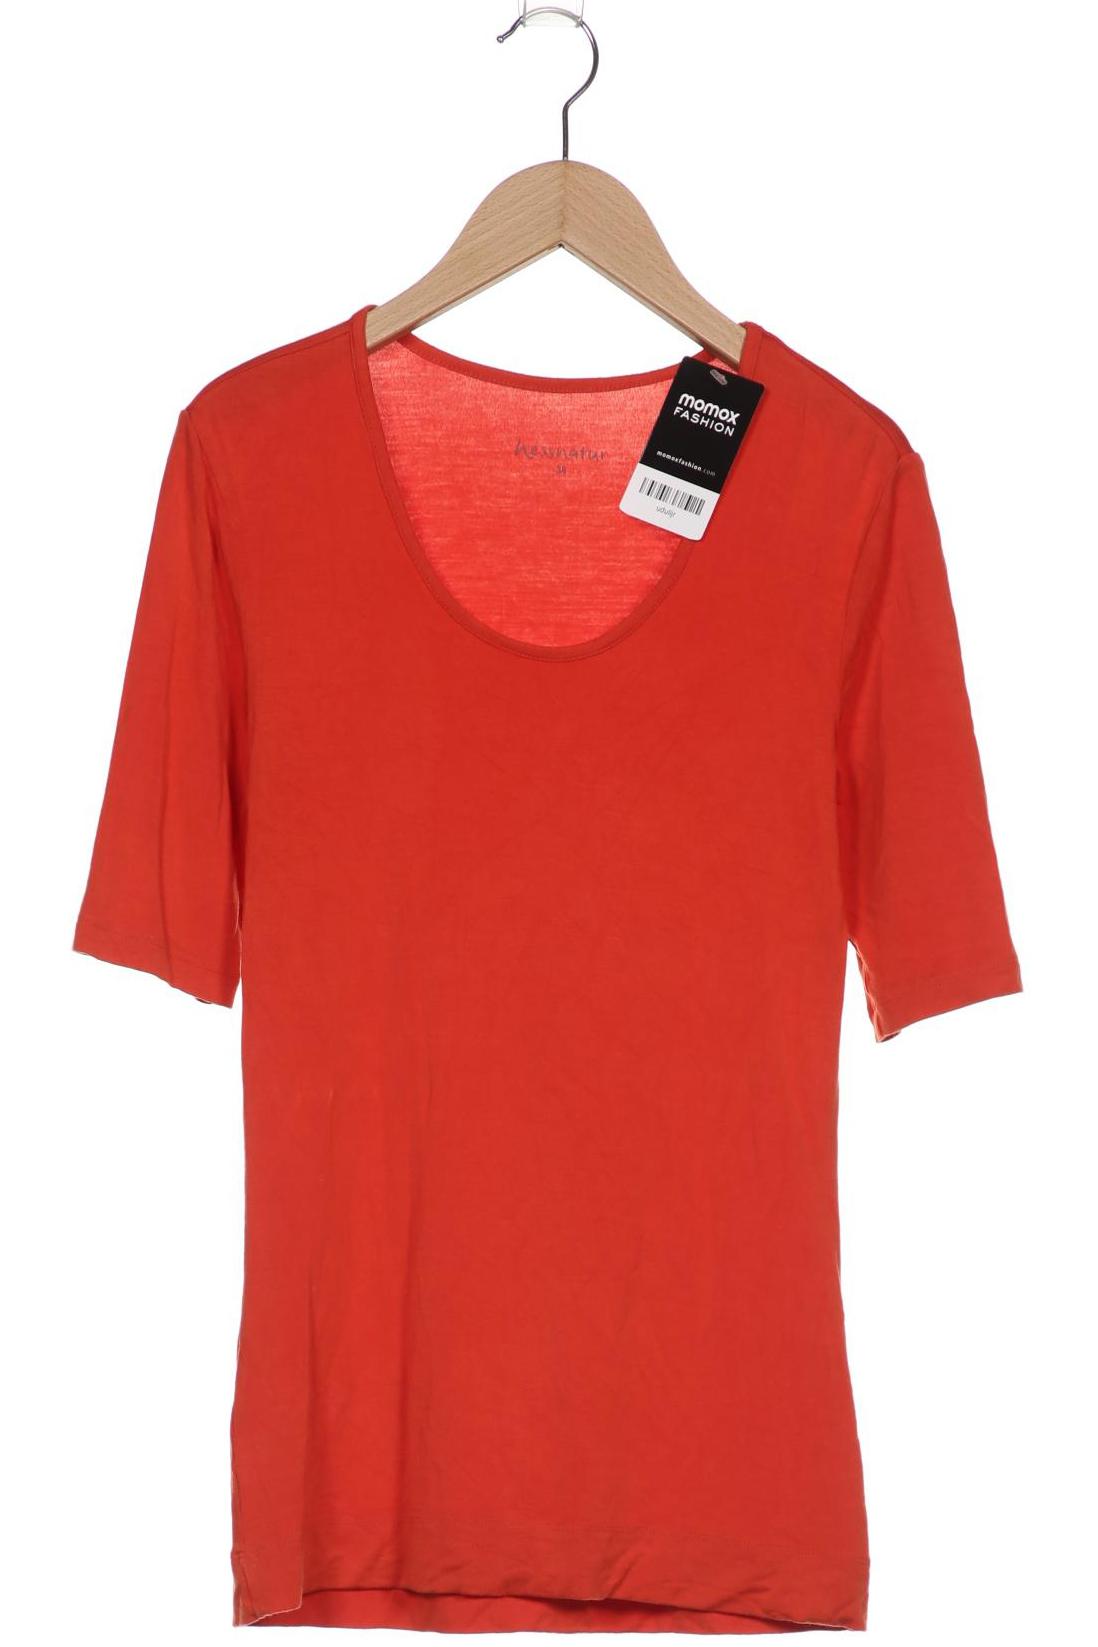 hessnatur Damen T-Shirt, orange von hessnatur